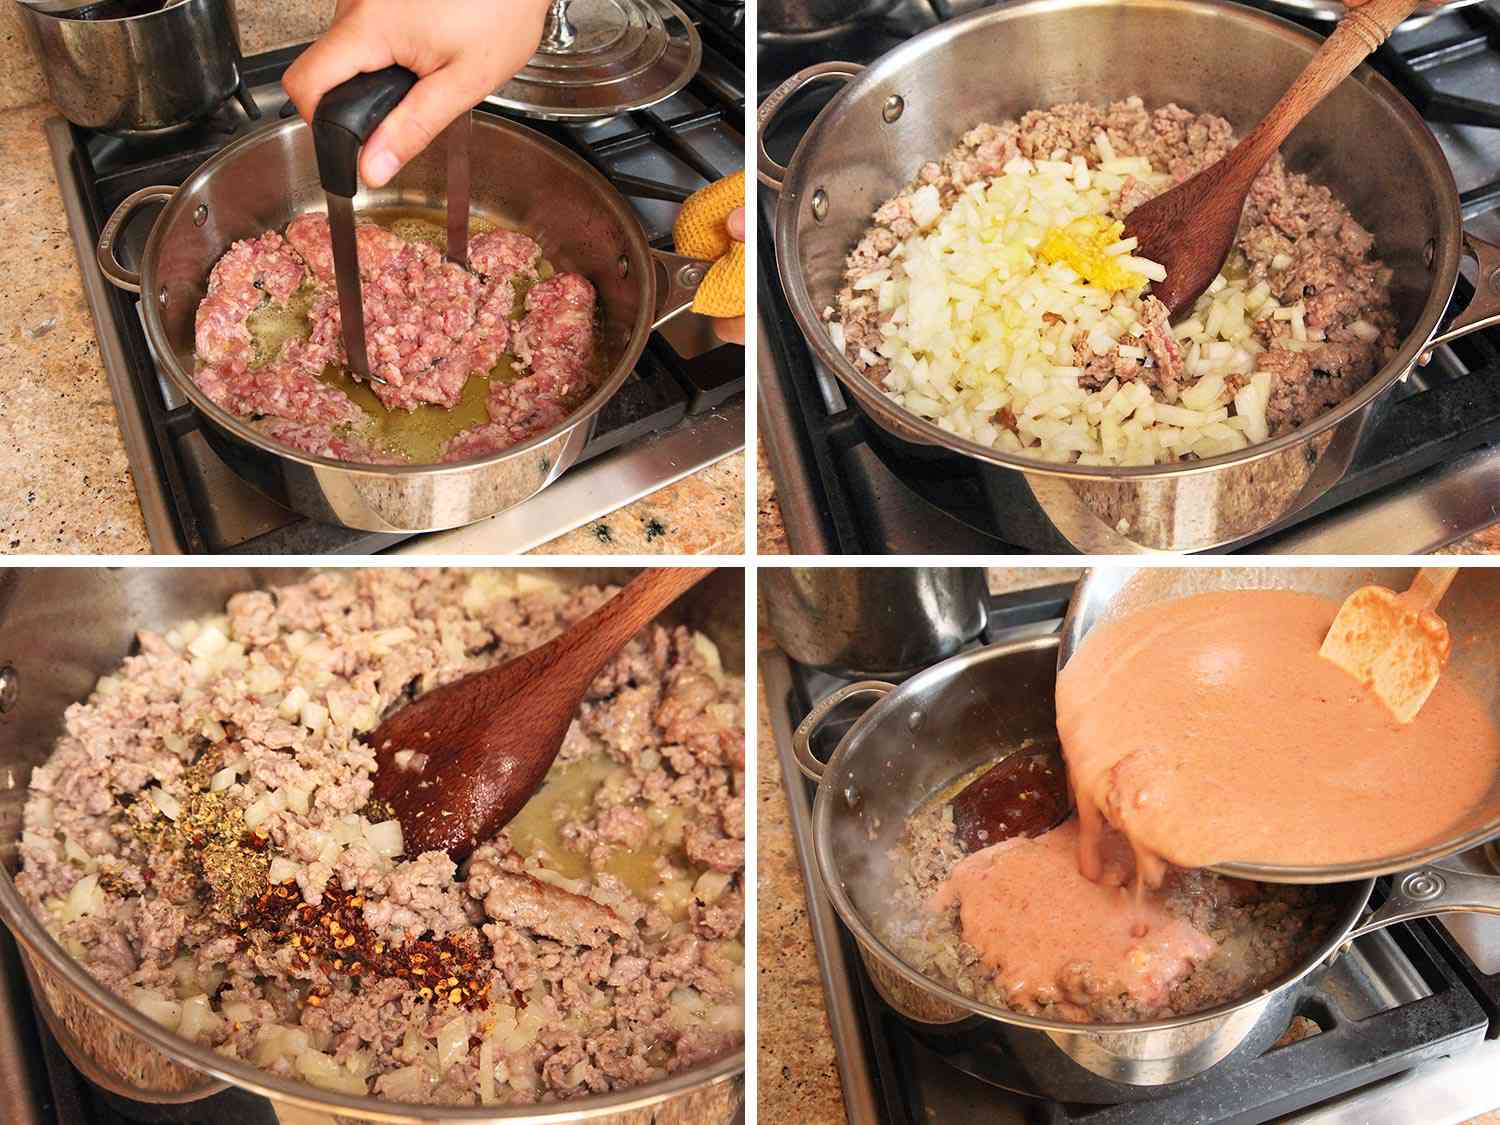 制作炉顶意大利面的拼贴画:在平底锅里把香肠煎成褐色并捣碎，在锅里加入洋葱、大蒜、红辣椒片、干牛至和番茄酱。到